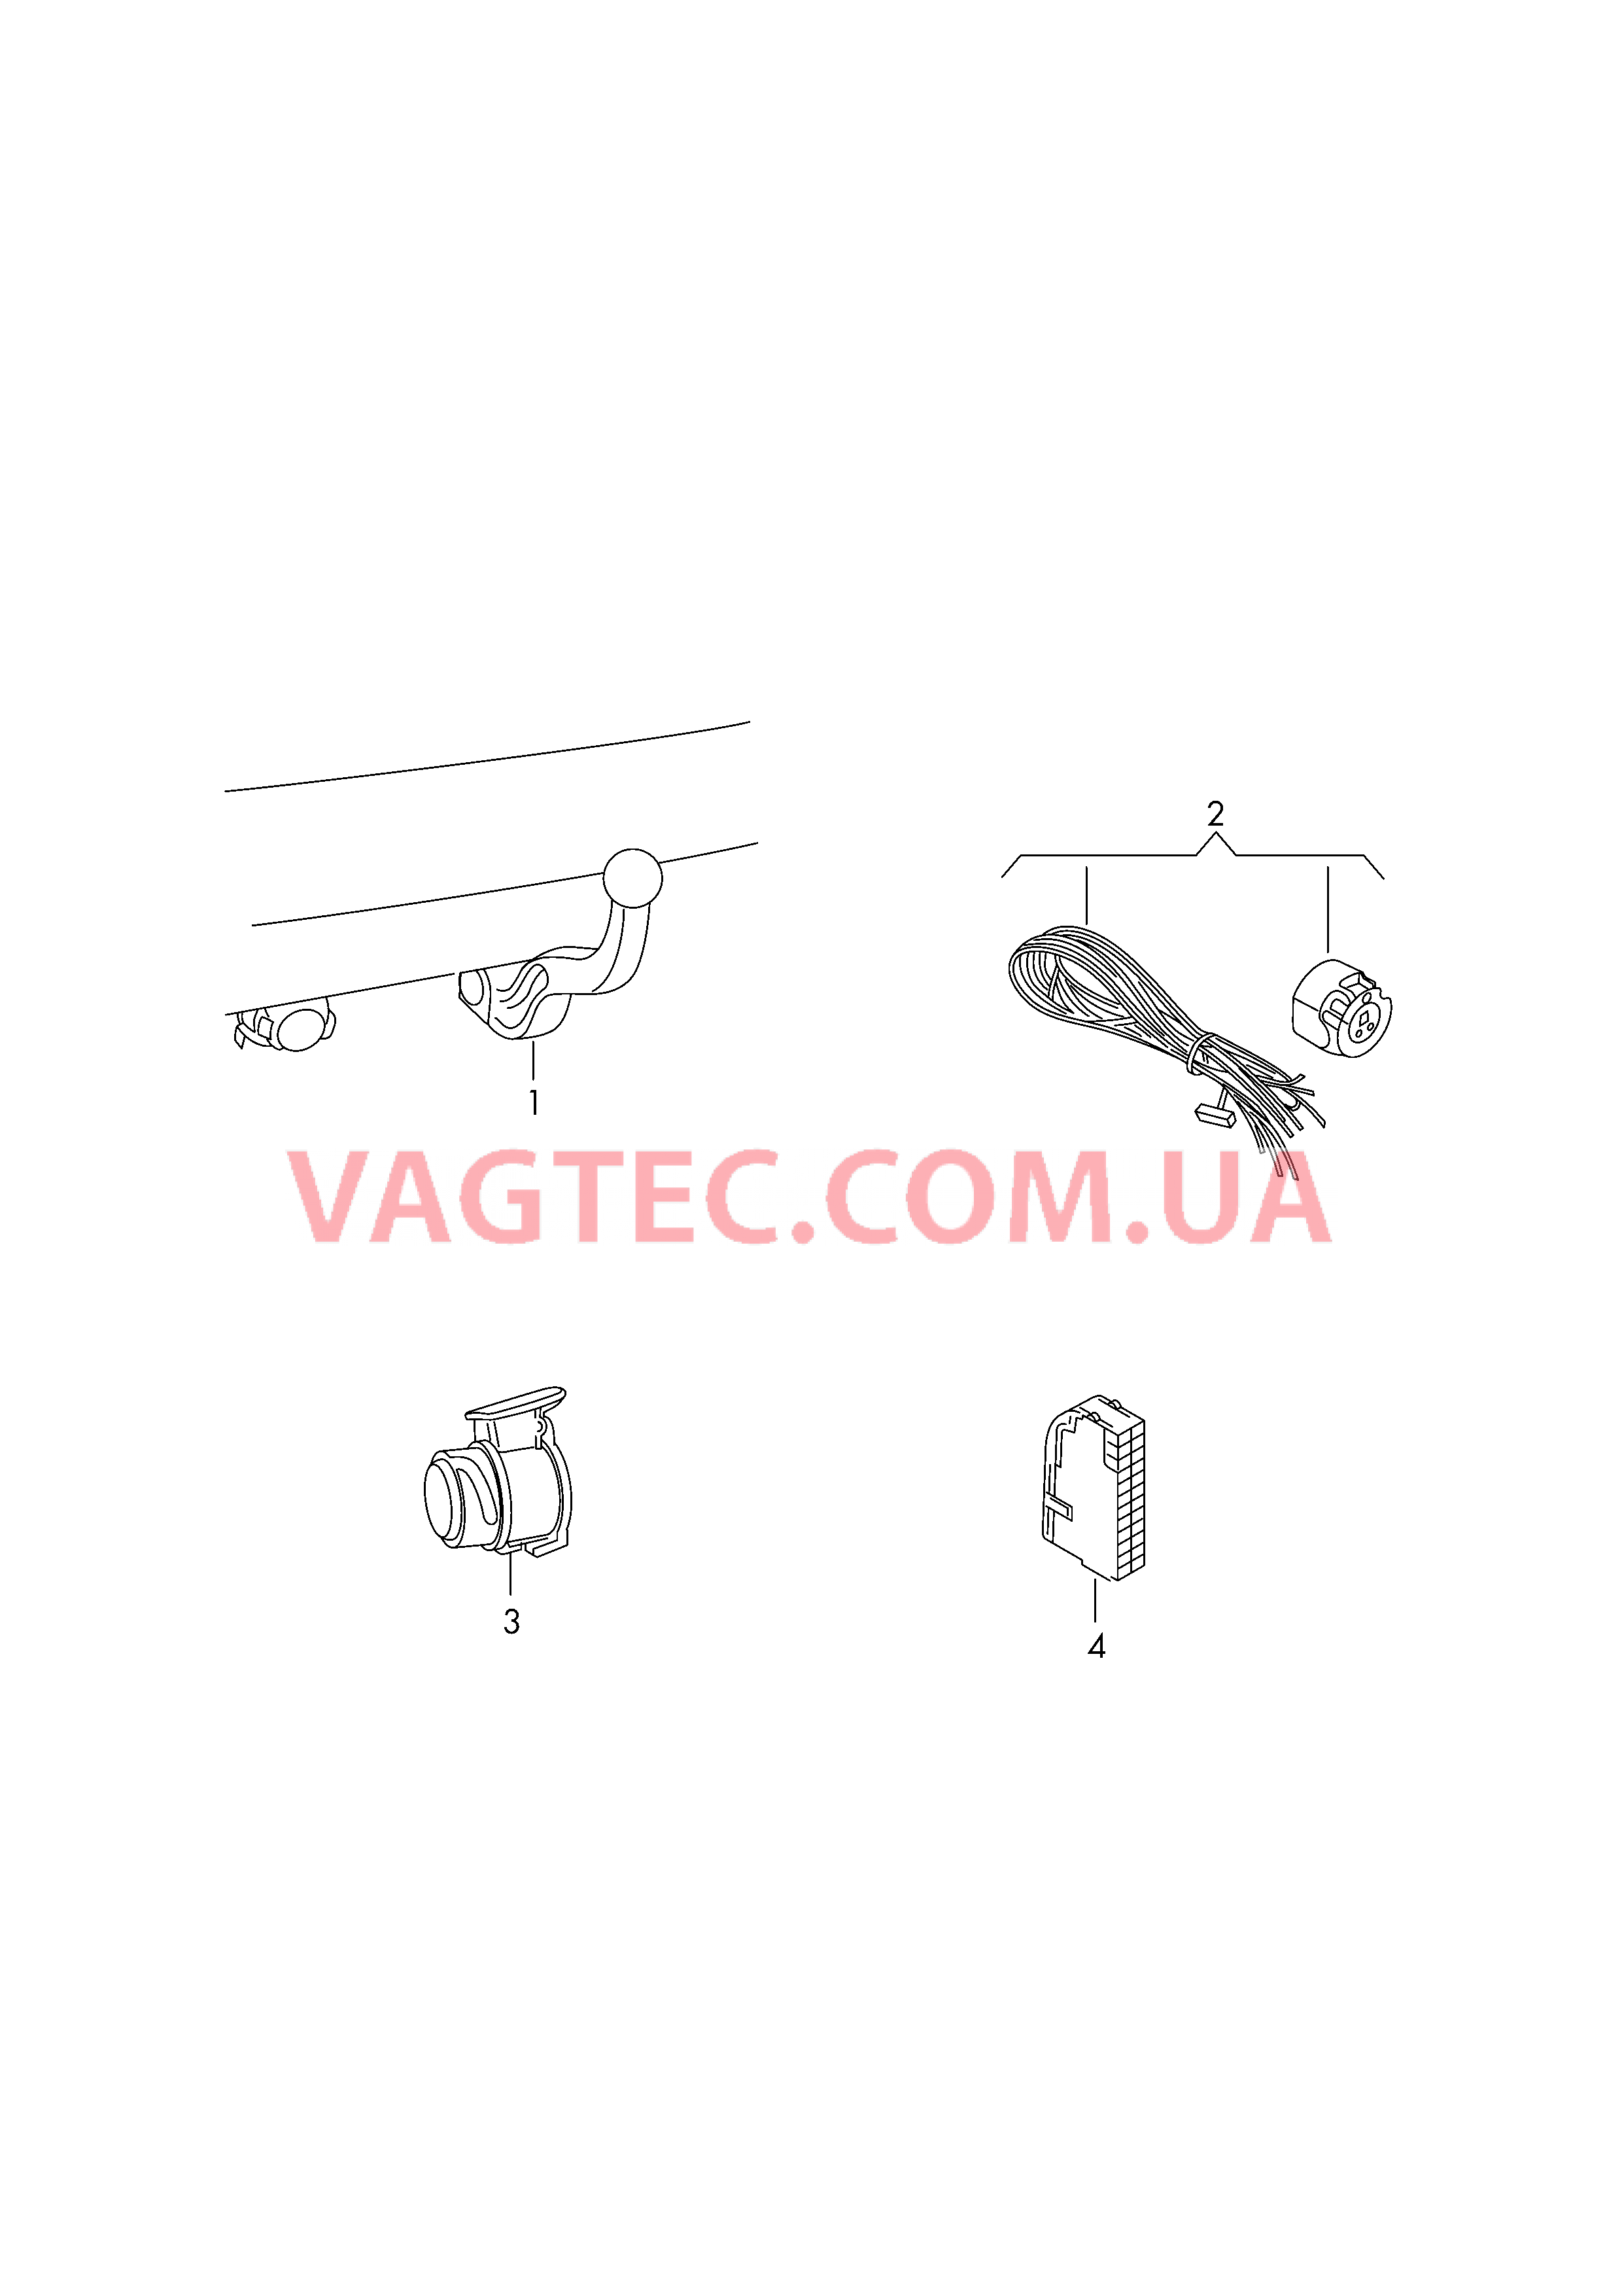 Оригинальные аксессуары Тягово-сцепное устройство, поворотное  Установочный комплект электр. оборудования для прицепа  Адаптер Кабель-адаптер  для AUDI A3 2018